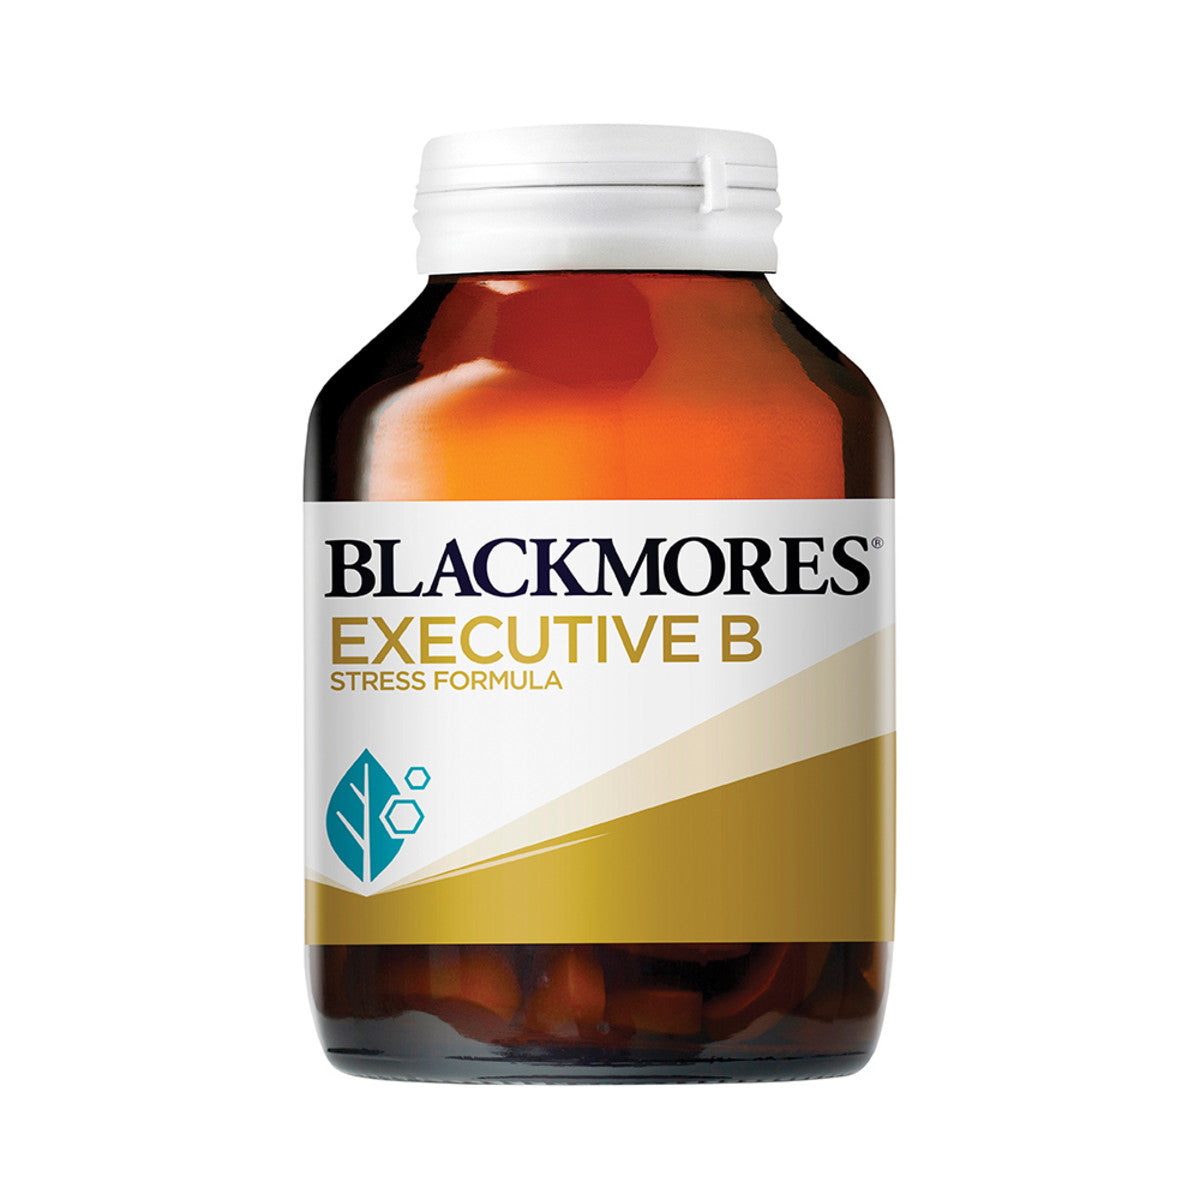 Blackmores - Executive B Stress Formula